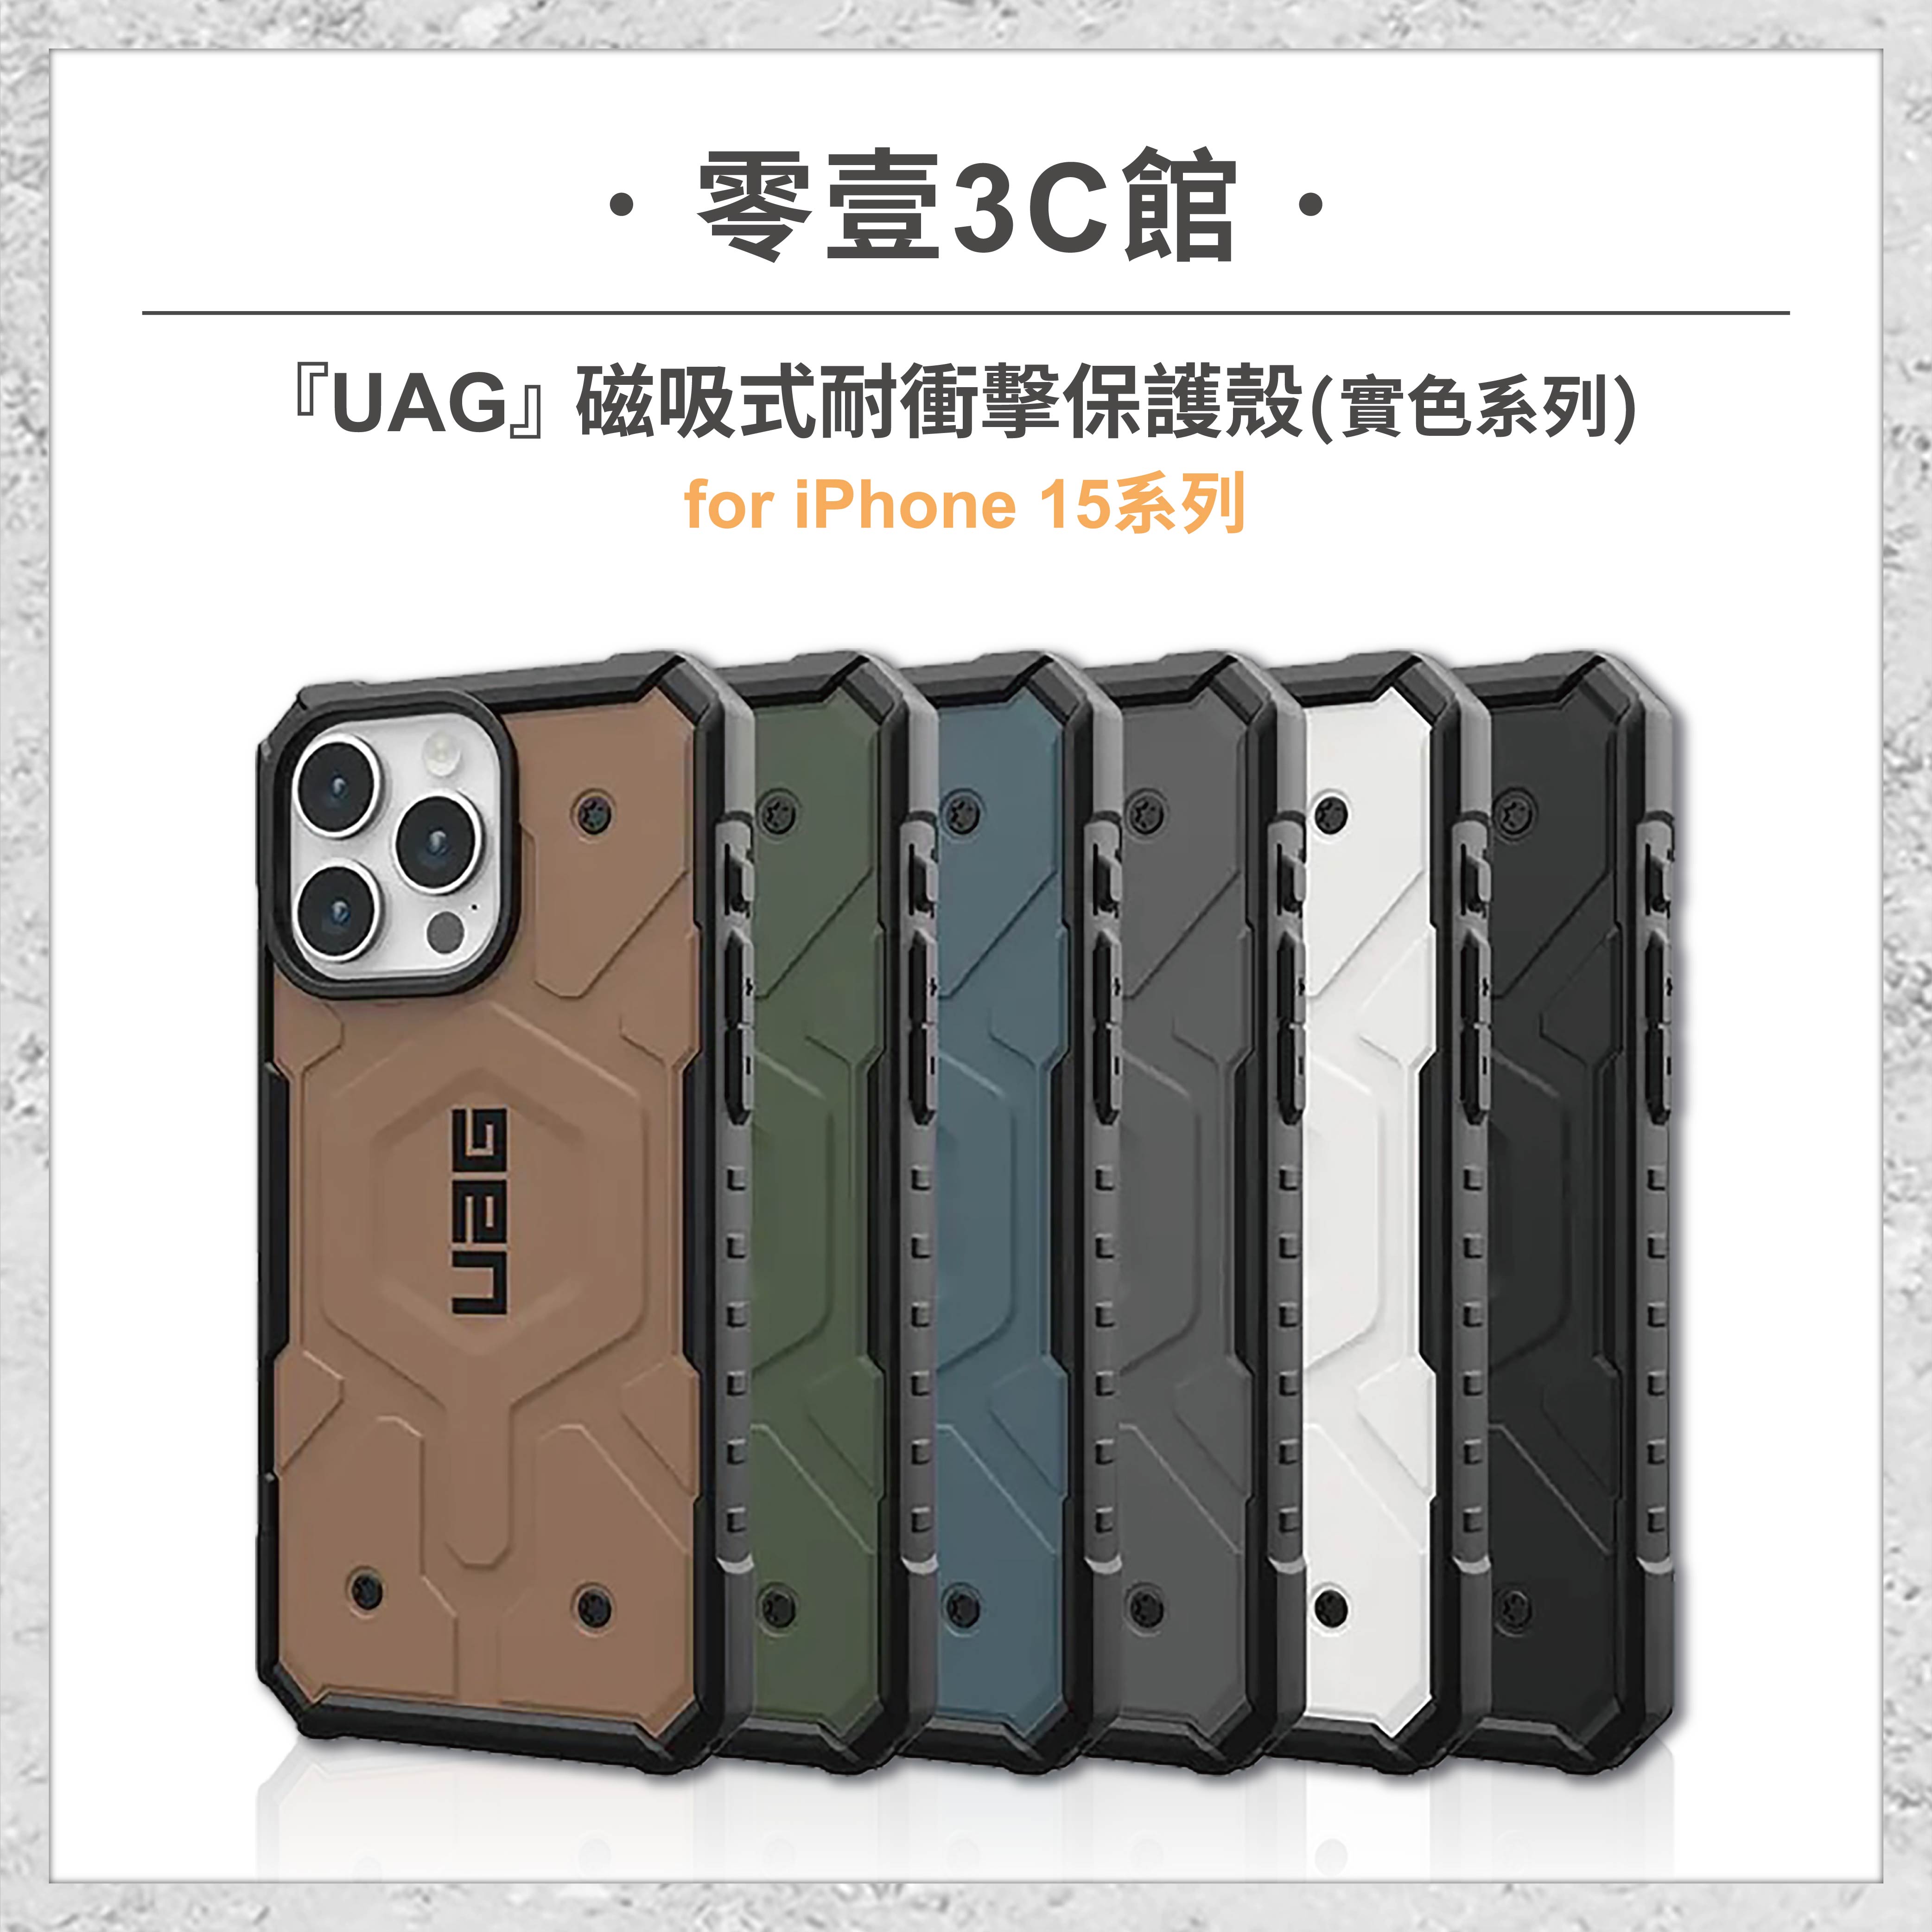 『UAG』磁吸式耐衝擊保護殼(實色系列) for iPhone15系列 15 15 Plus 15 Pro 15 Pro Max MagSafe磁吸式手機殼 手機防摔保護殼 防摔手機殼